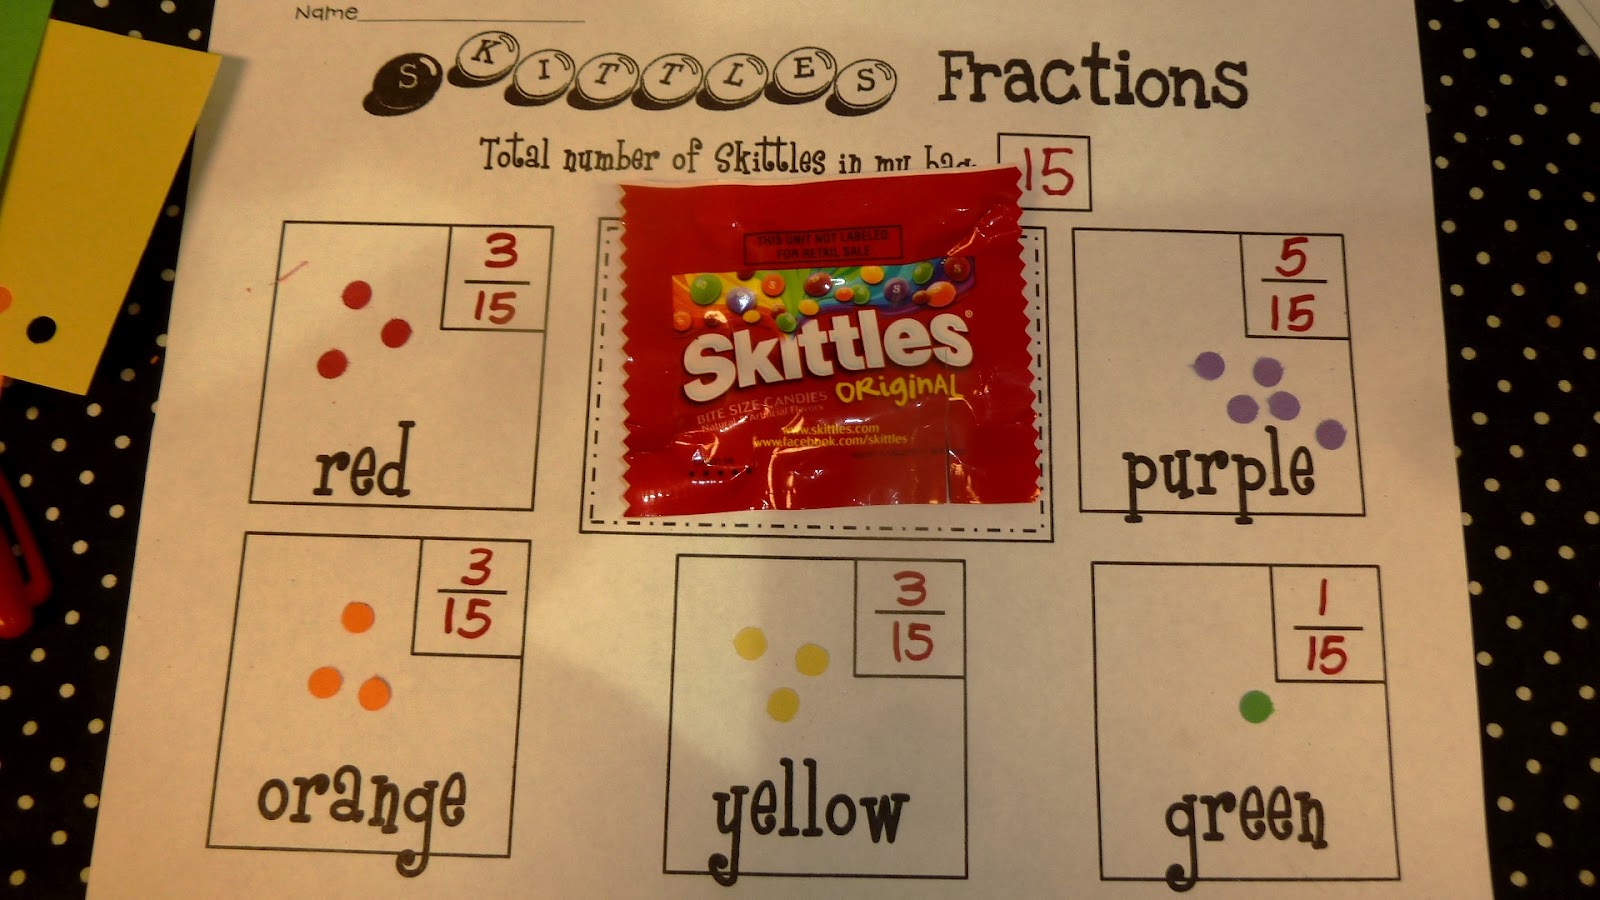 New 654 Fraction Worksheet With Skittles